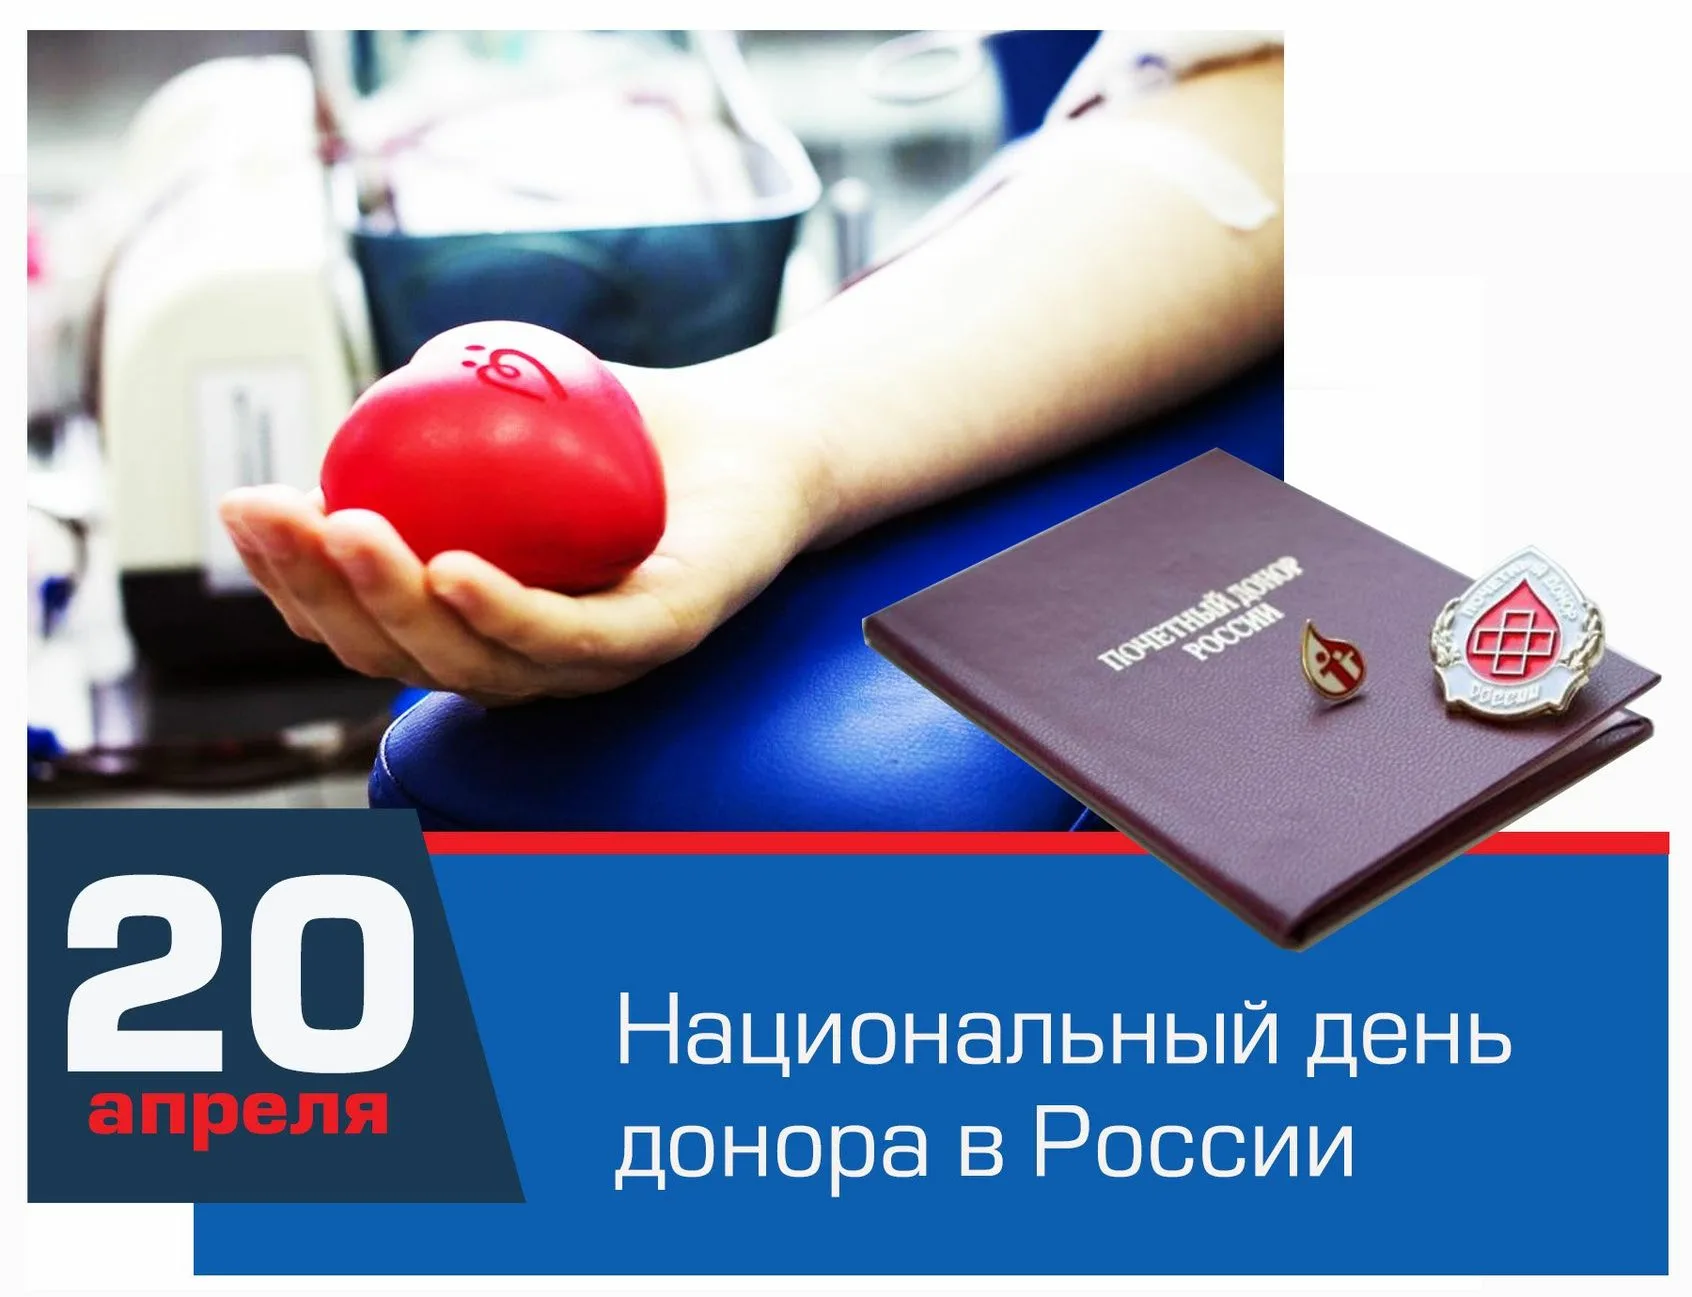 День донорства в россии. Национальный день донора. 20 Апреля день донора. Национальный день донора крови в России. День донора крови 20 апреля.